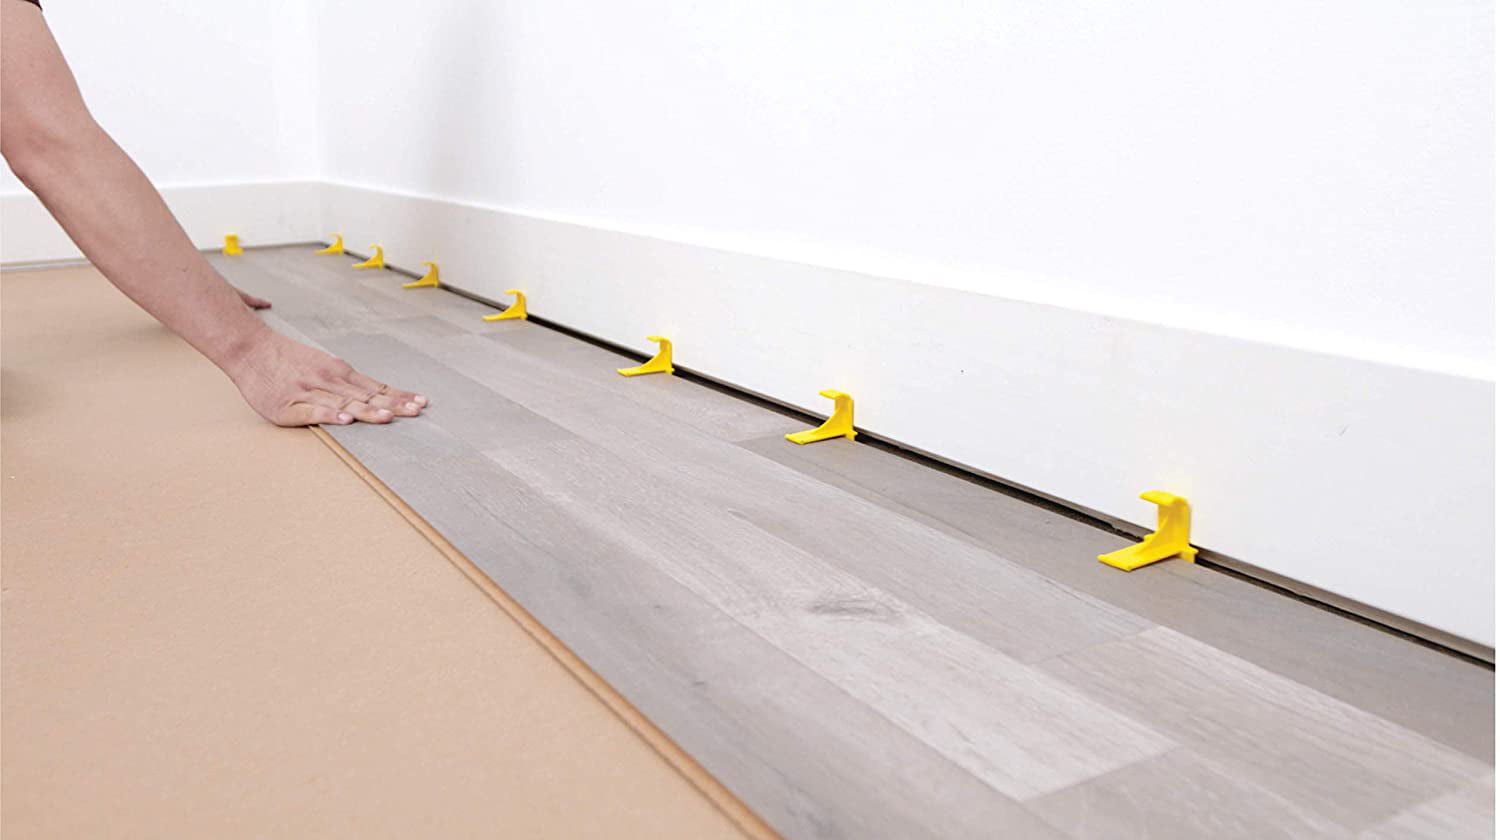 Tfloor Laminate Flooring Spacers For, Hardwood Floor Wall Spacers